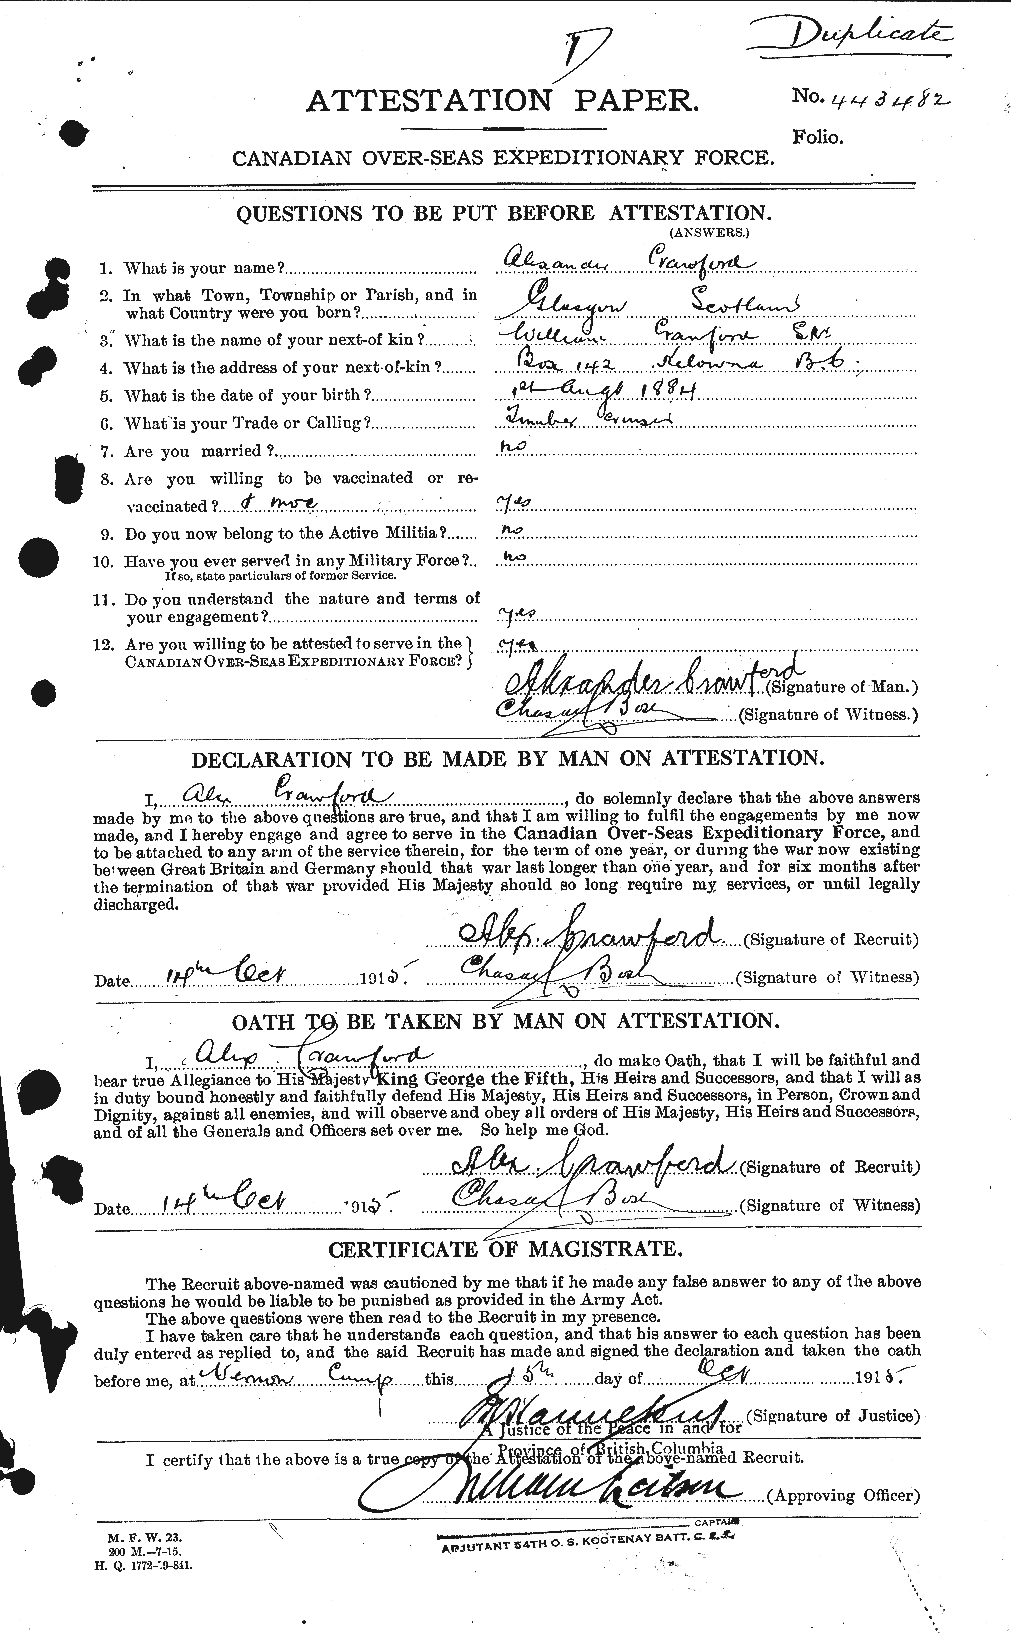 Dossiers du Personnel de la Première Guerre mondiale - CEC 060963a